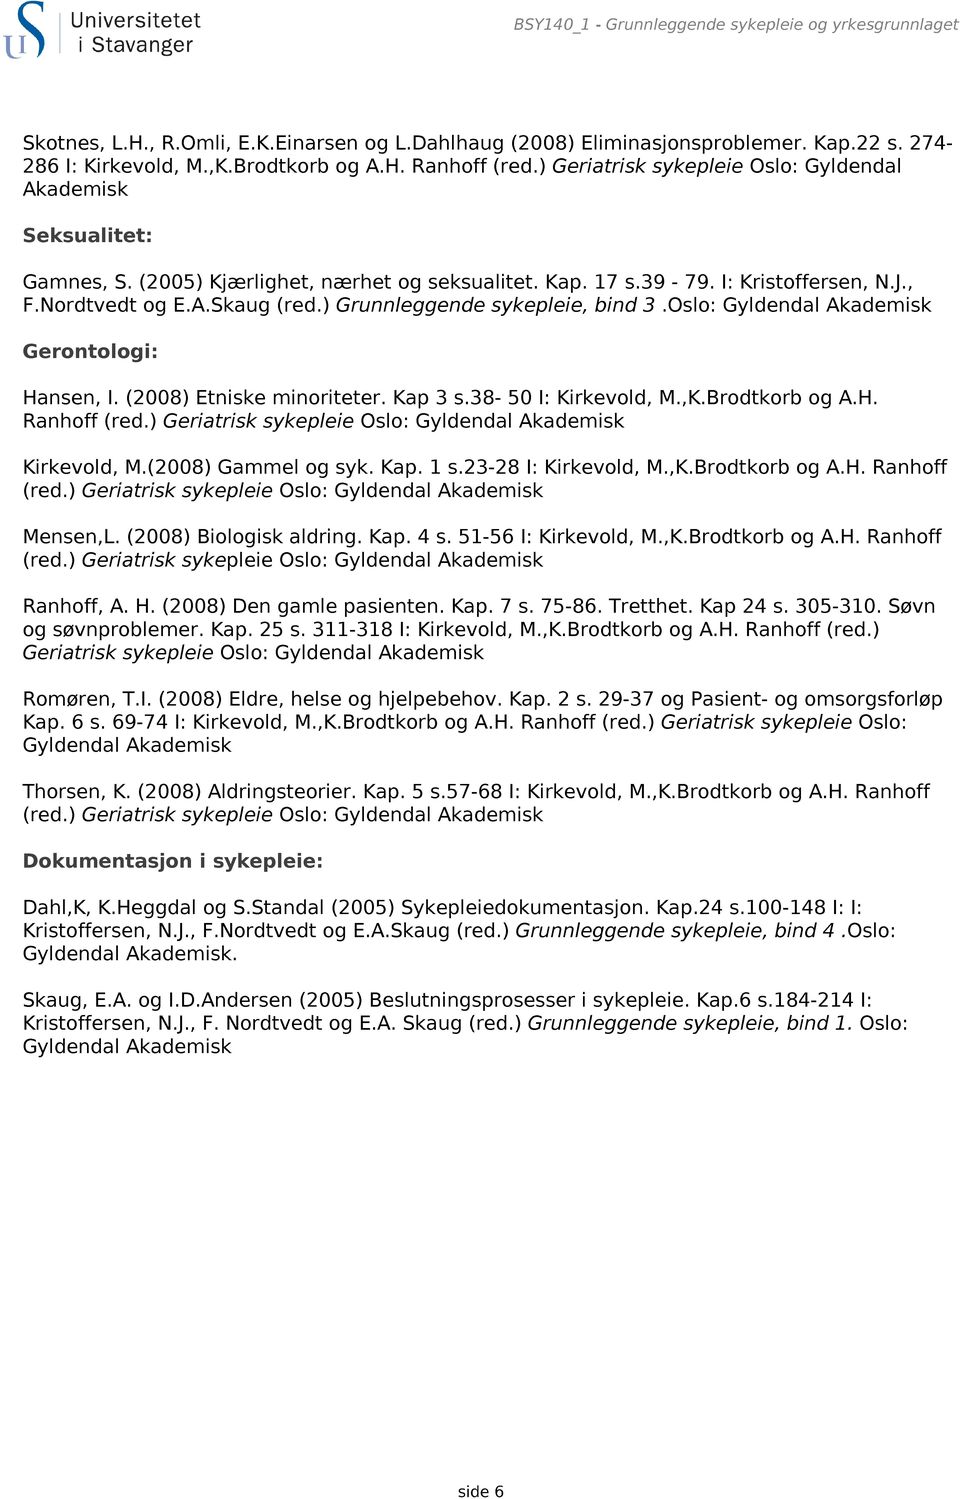 ) Grunnleggende sykepleie, bind 3.Oslo: Gyldendal Akademisk Gerontologi: Hansen, I. (2008) Etniske minoriteter. Kap 3 s.38-50 I: Kirkevold, M.,K.Brodtkorb og A.H. Ranhoff (red.